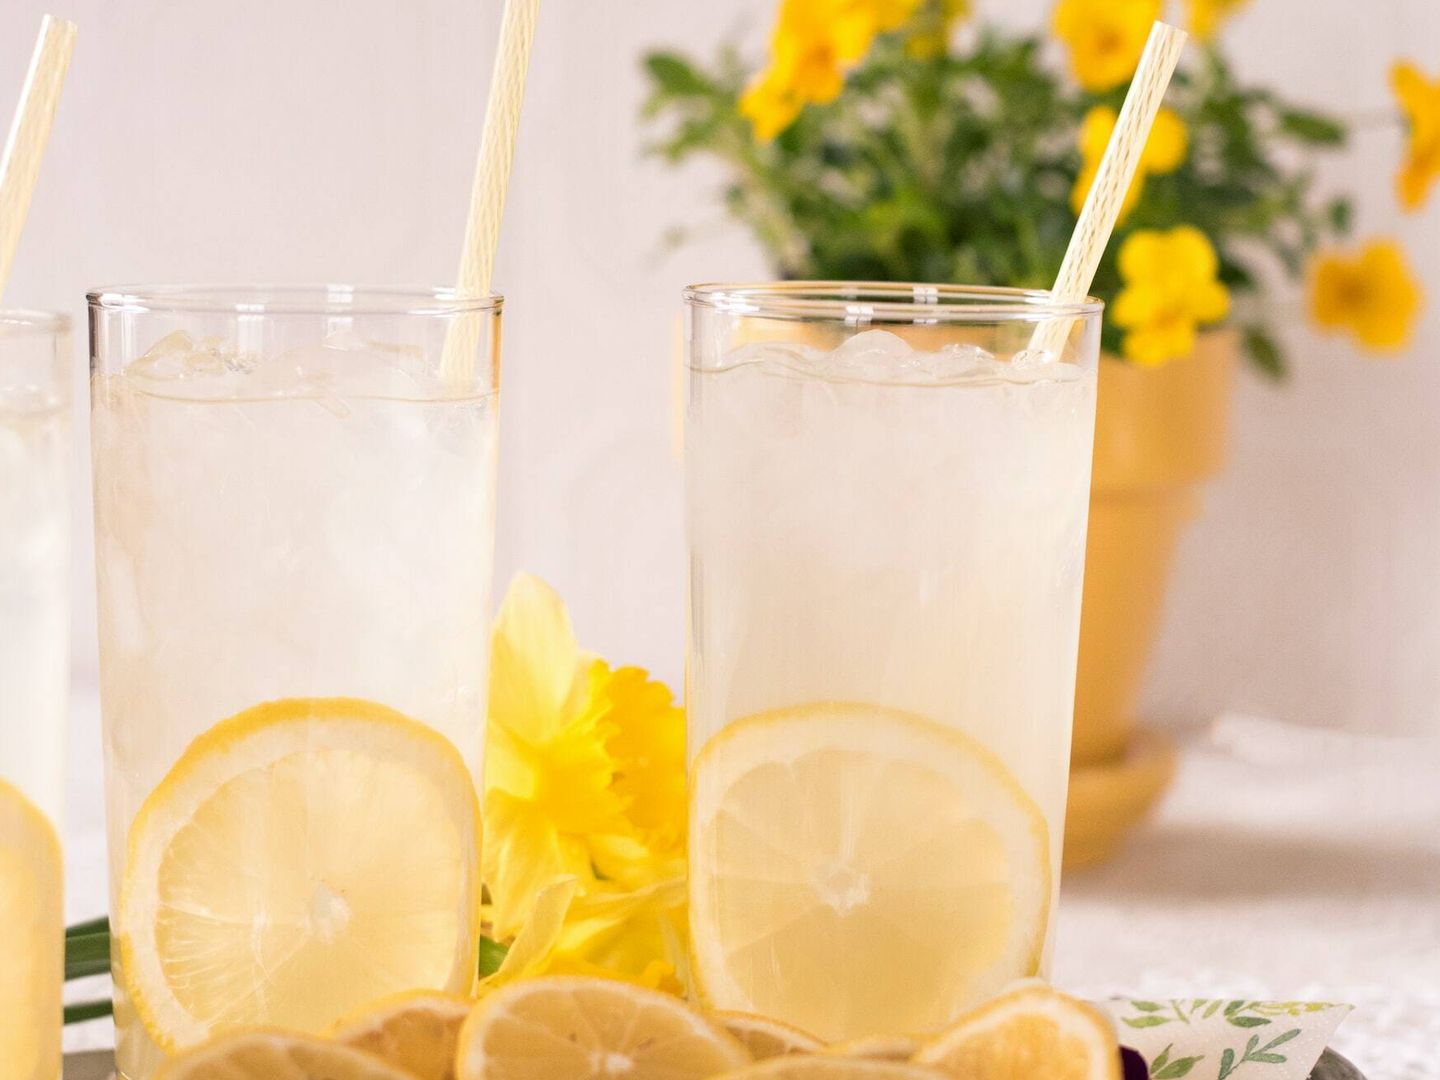 La limonada es una bebida habitual de los días de verano (Charity Beth Long para Unsplash)